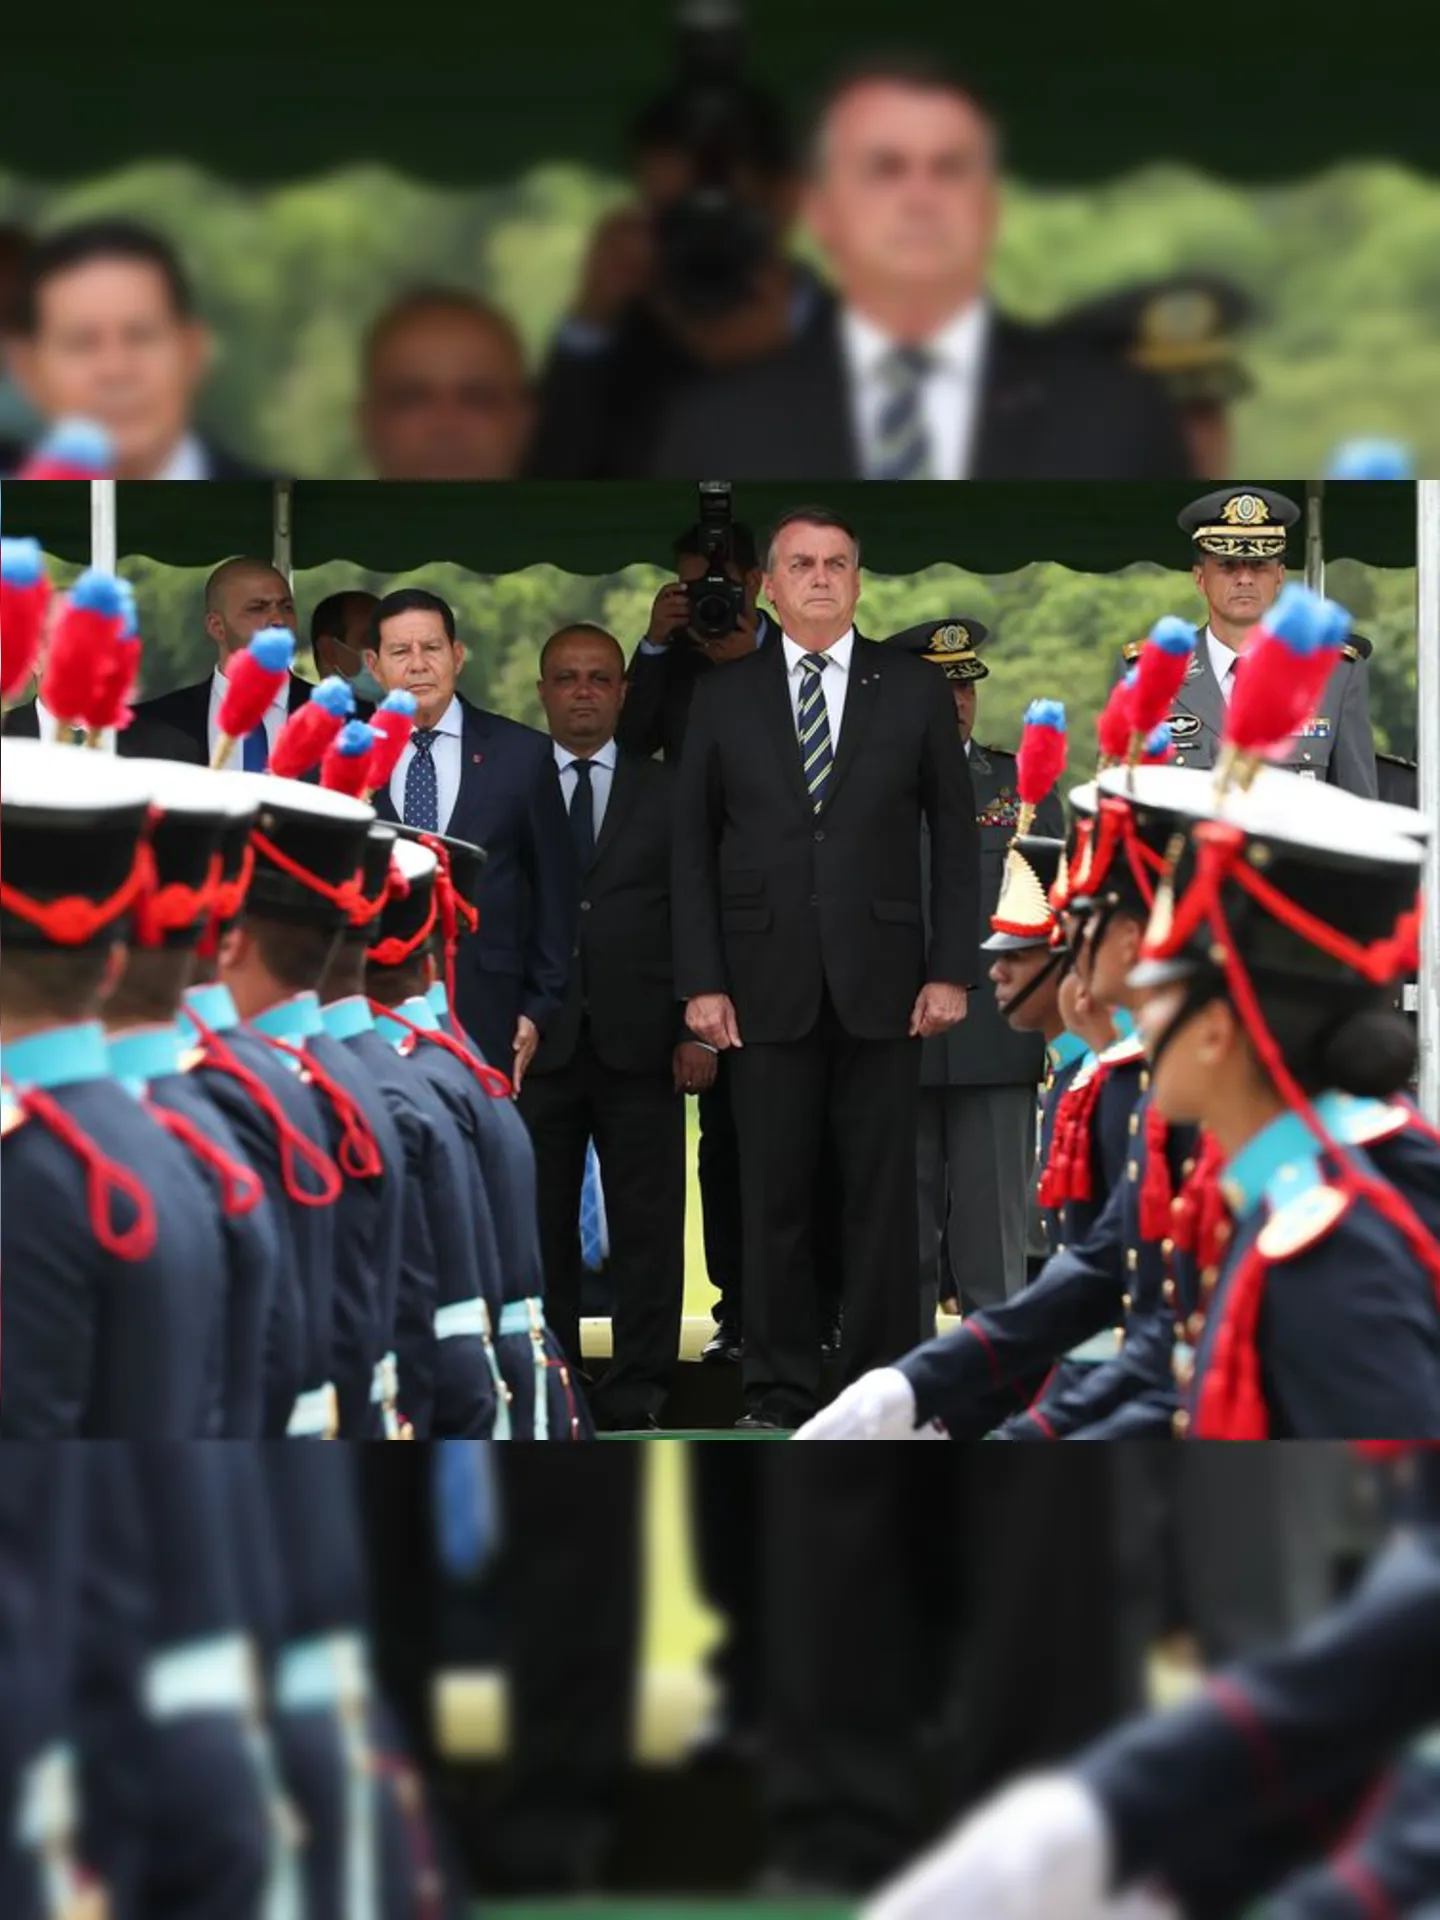 Presidente da República Jair Bolsonaro, recebe as Honras Militares onde é homenageado com salva de 21 tiros.